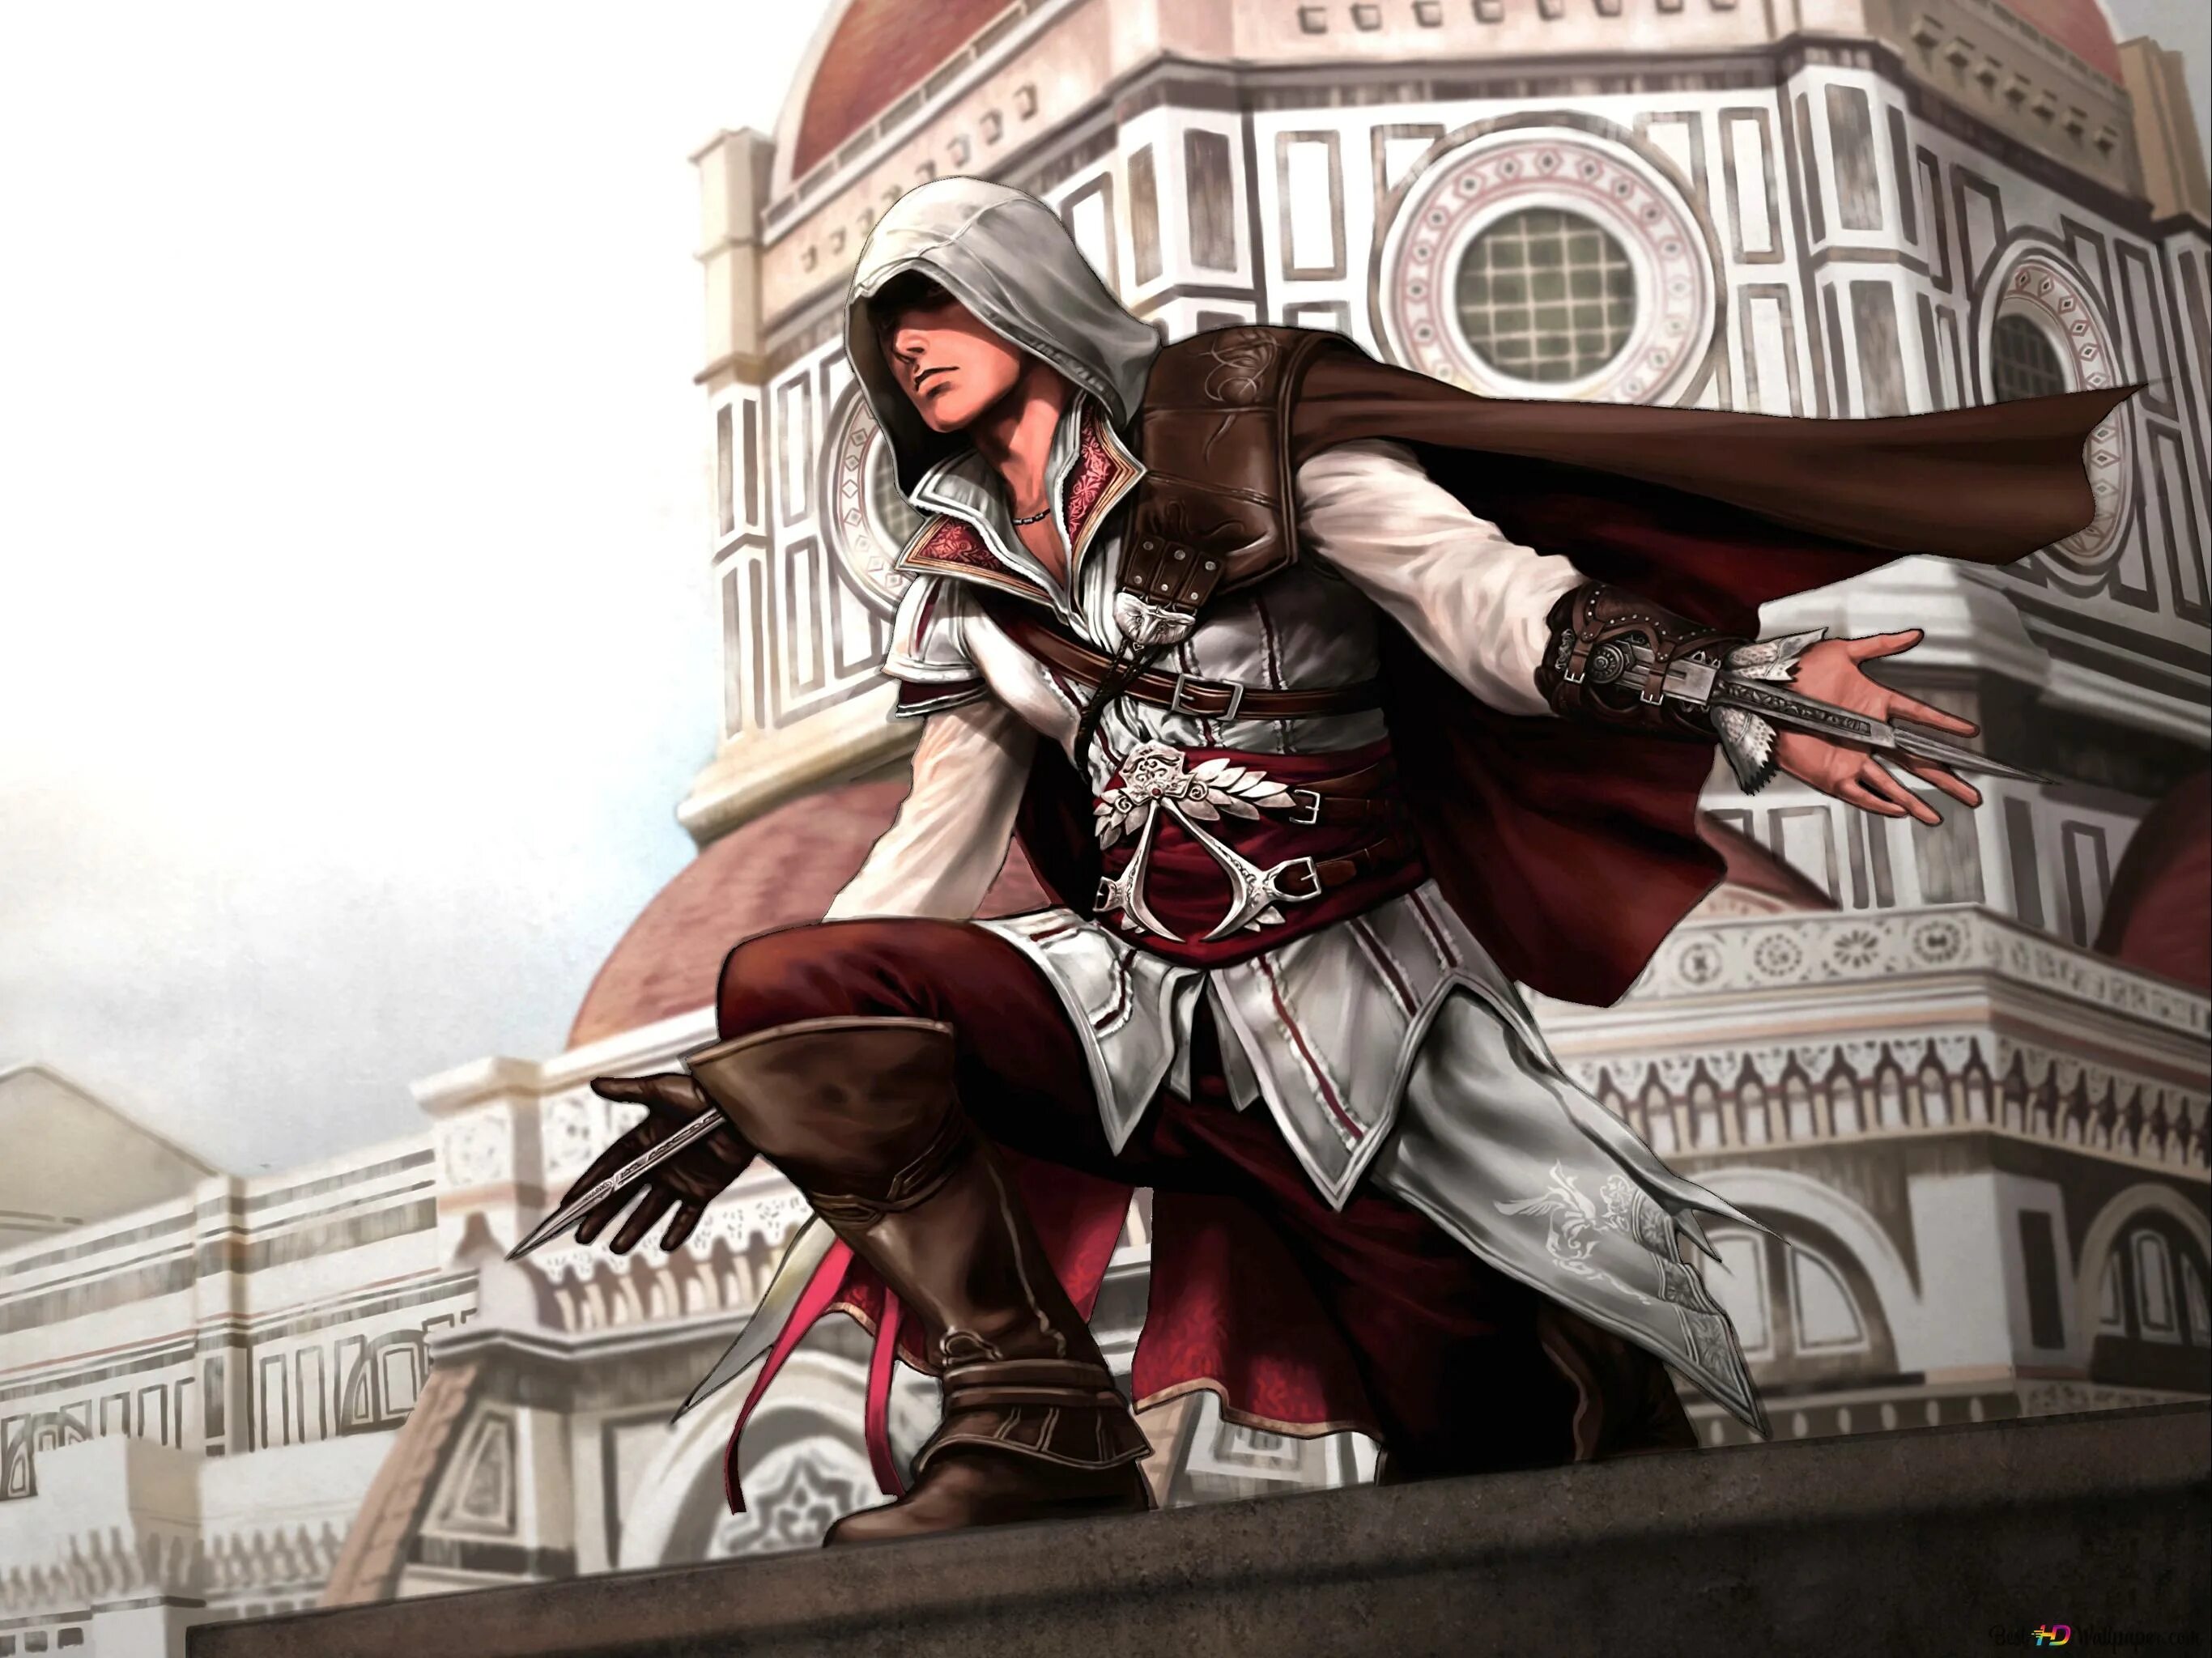 Ассасин крид арт. Assassin's Creed 2 Эцио Аудиторе. Assassins Creed 2 Эцио. Ассасин Крид 2 Эцио Аудиторе. Assassins Creed 2 Эцио концепт.